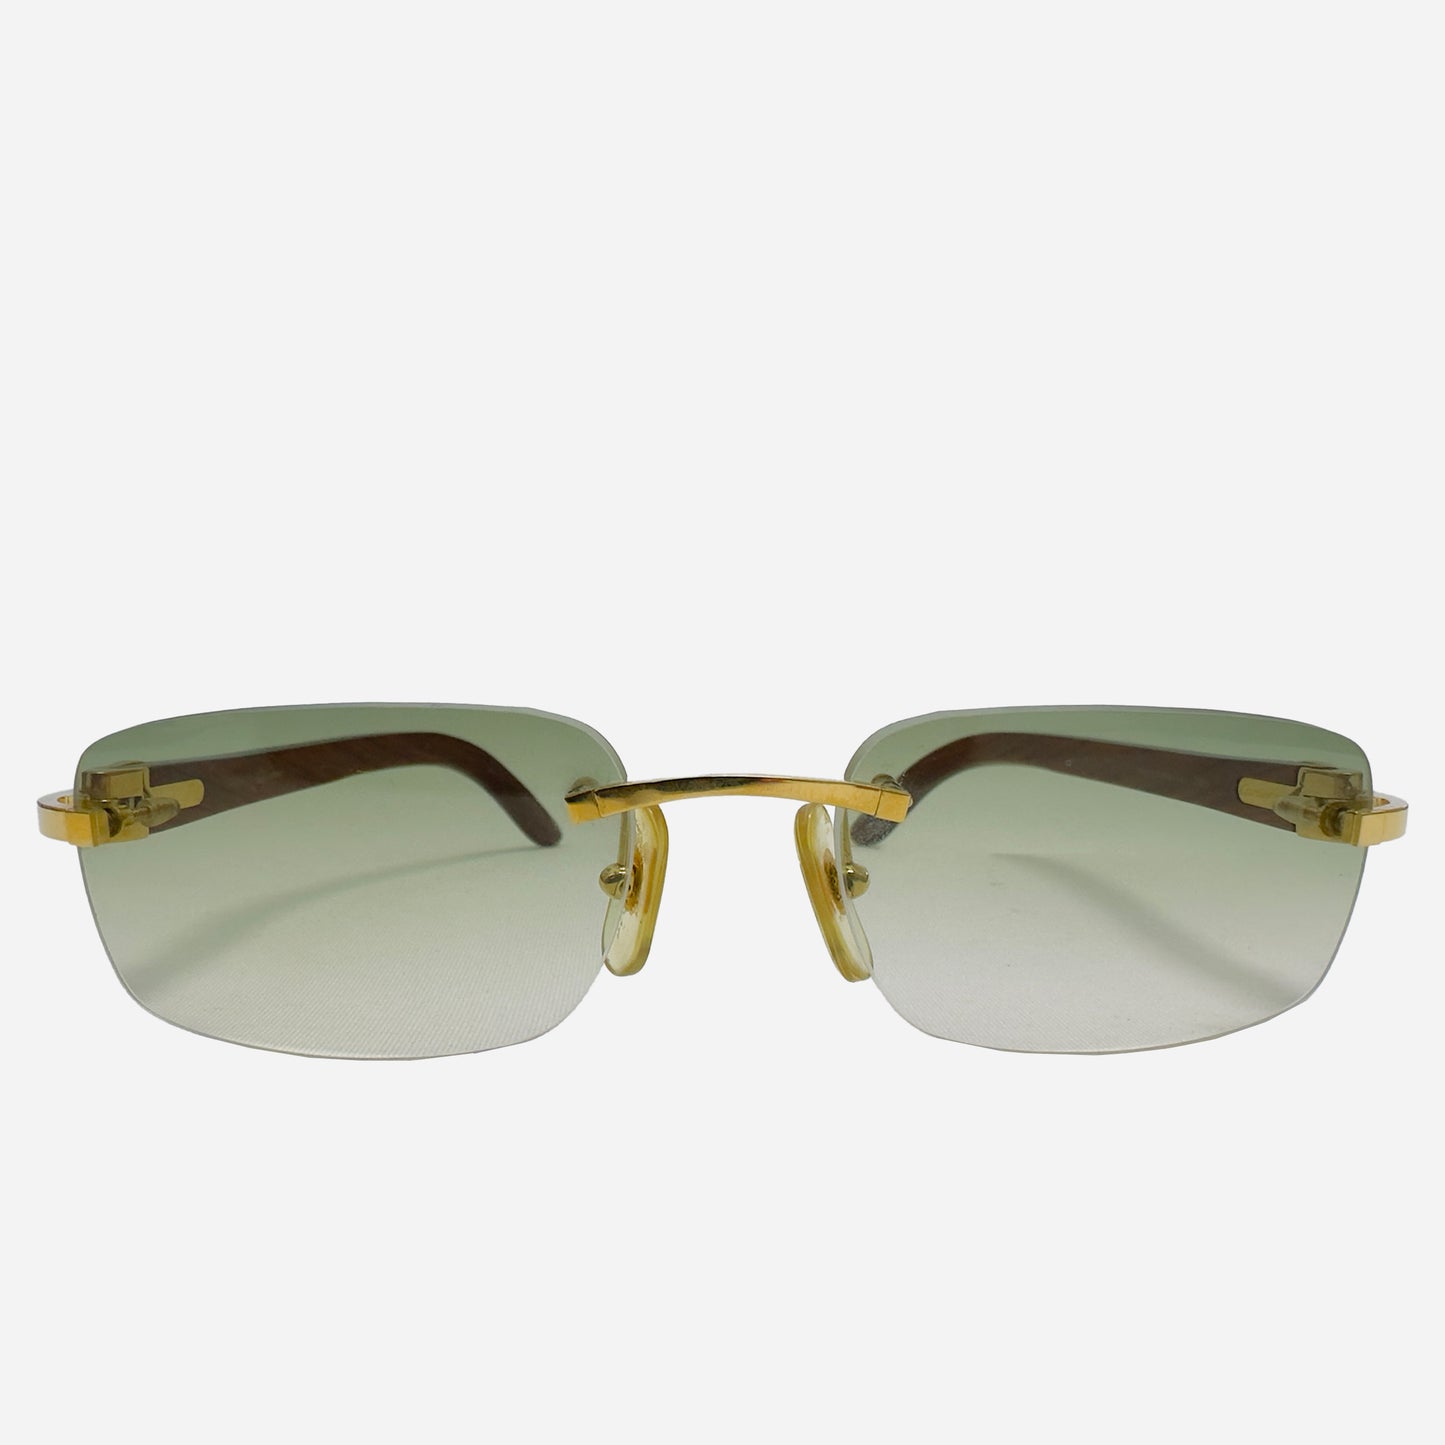 Vintage-Cartier-C-Decor-Bubinga-Wood-Rimless-Rahmenlose-Sonnenbrille-the-seekers-sunglasses-front